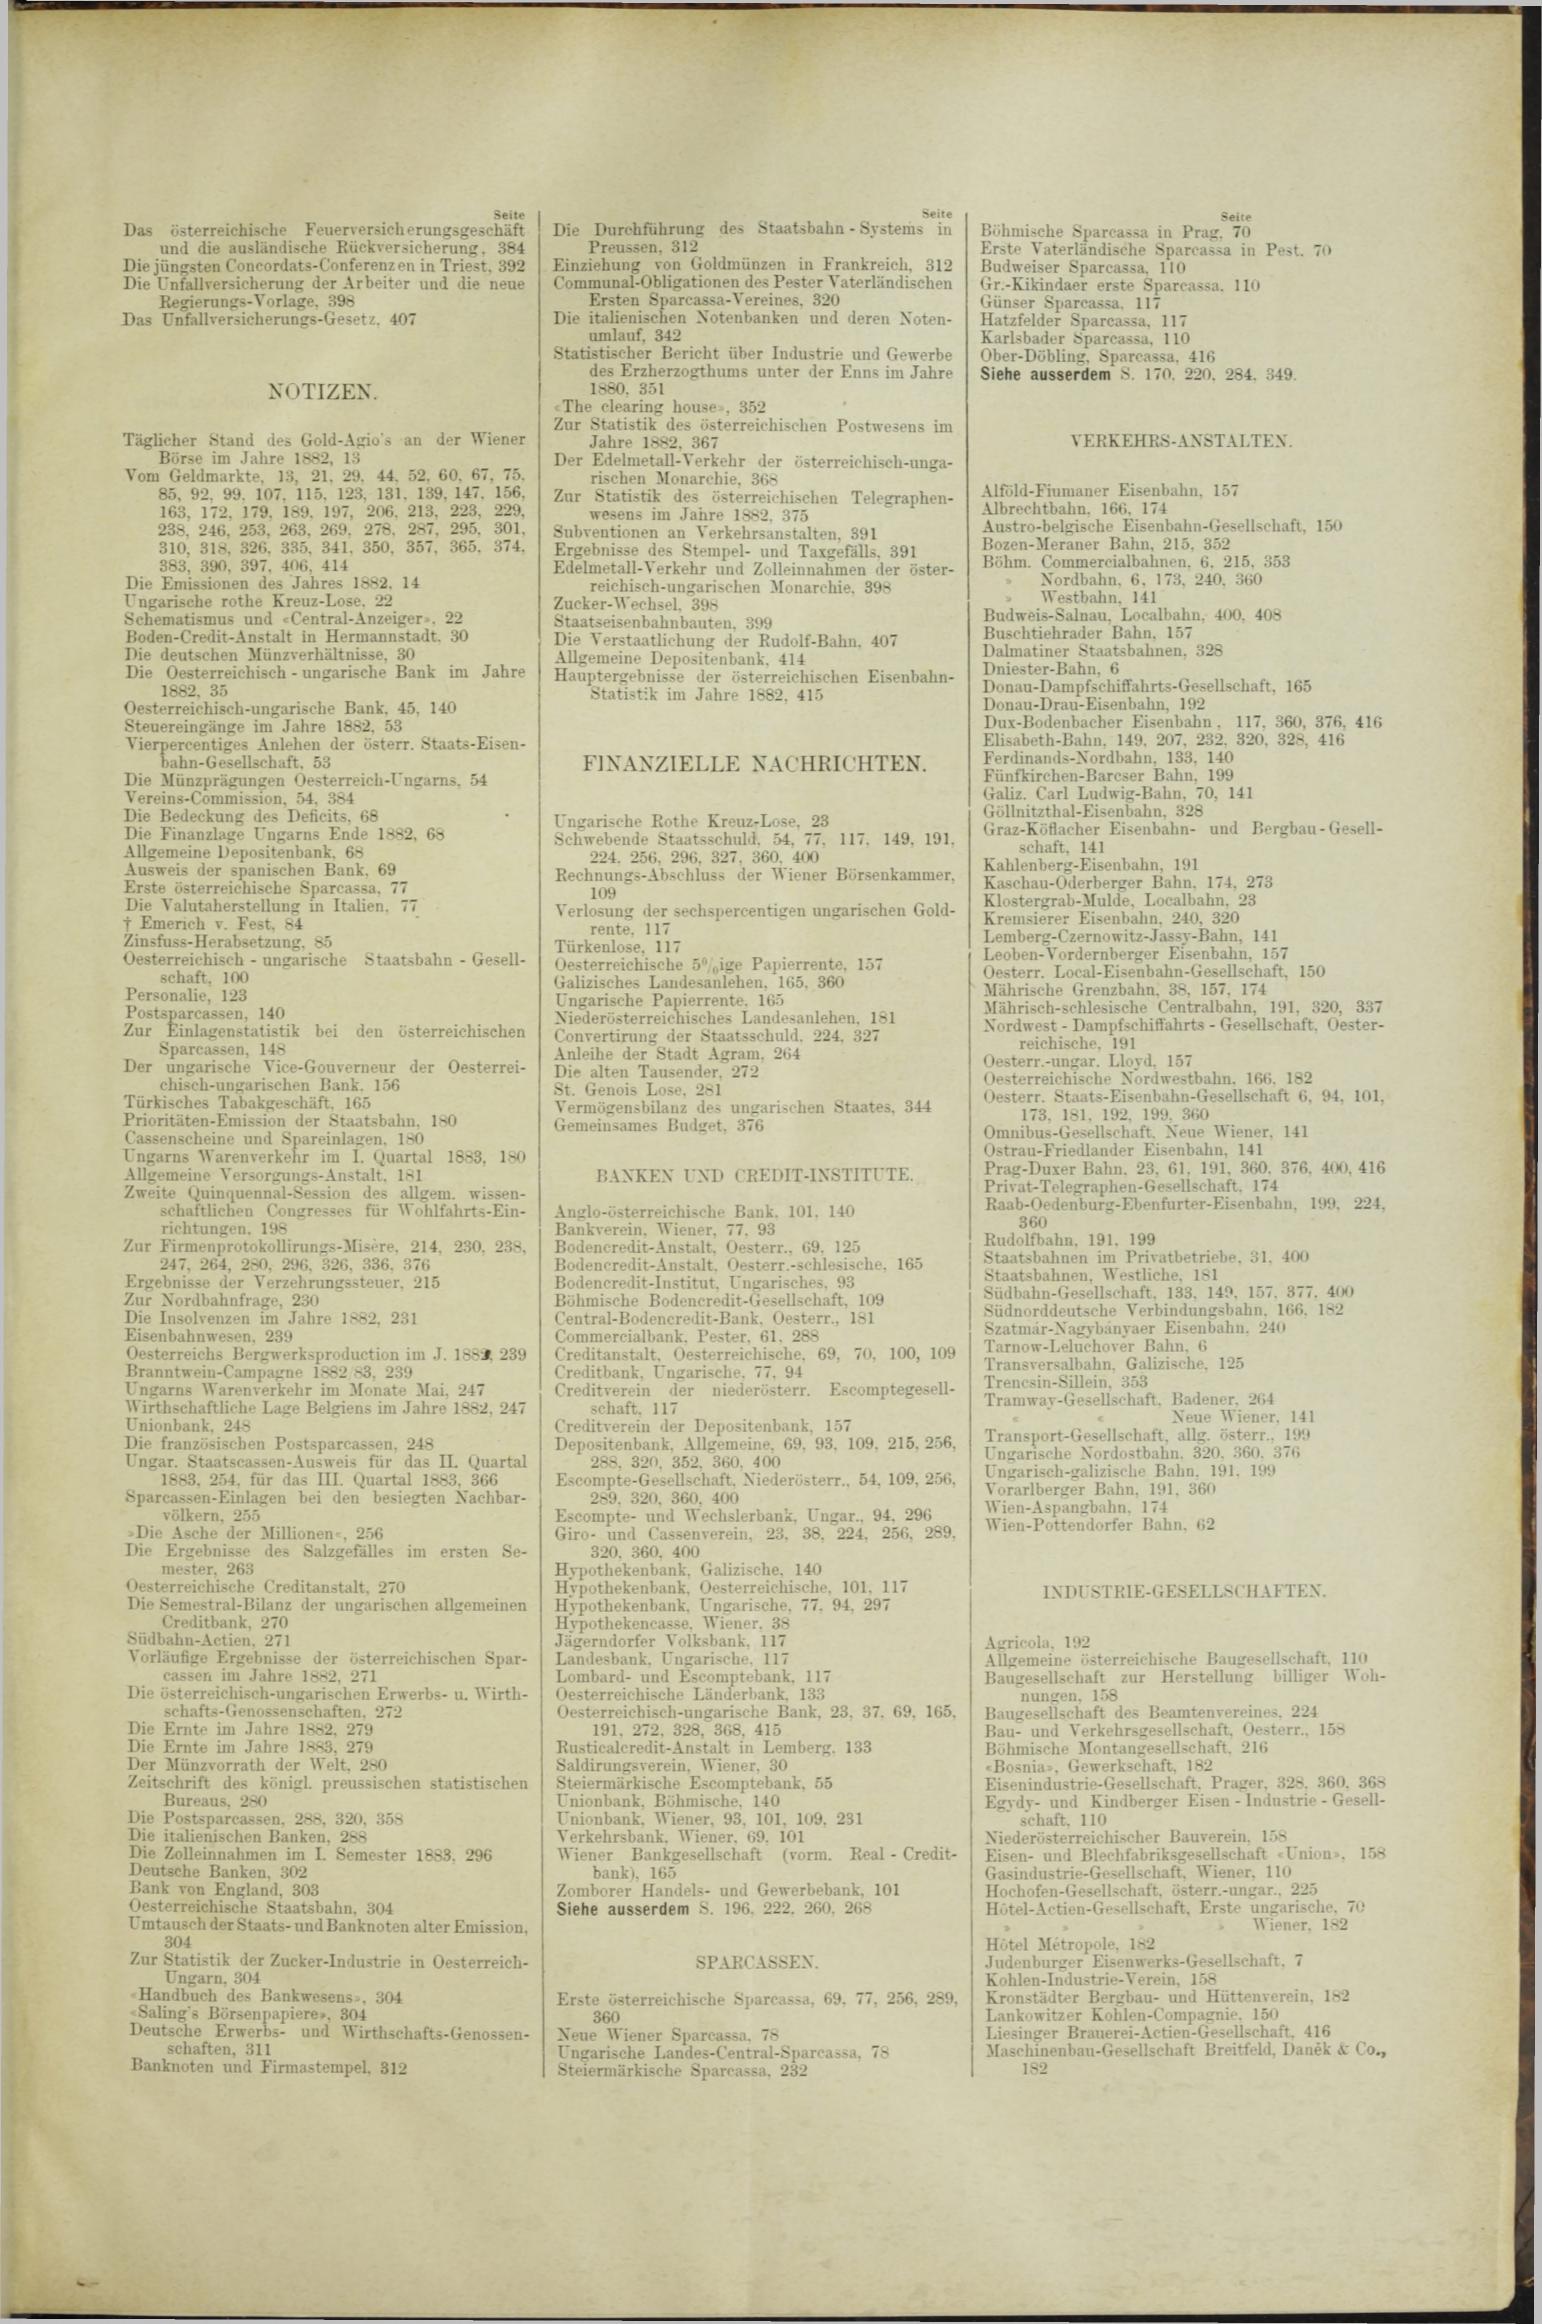 Der Tresor 05.07.1883 - Seite 11